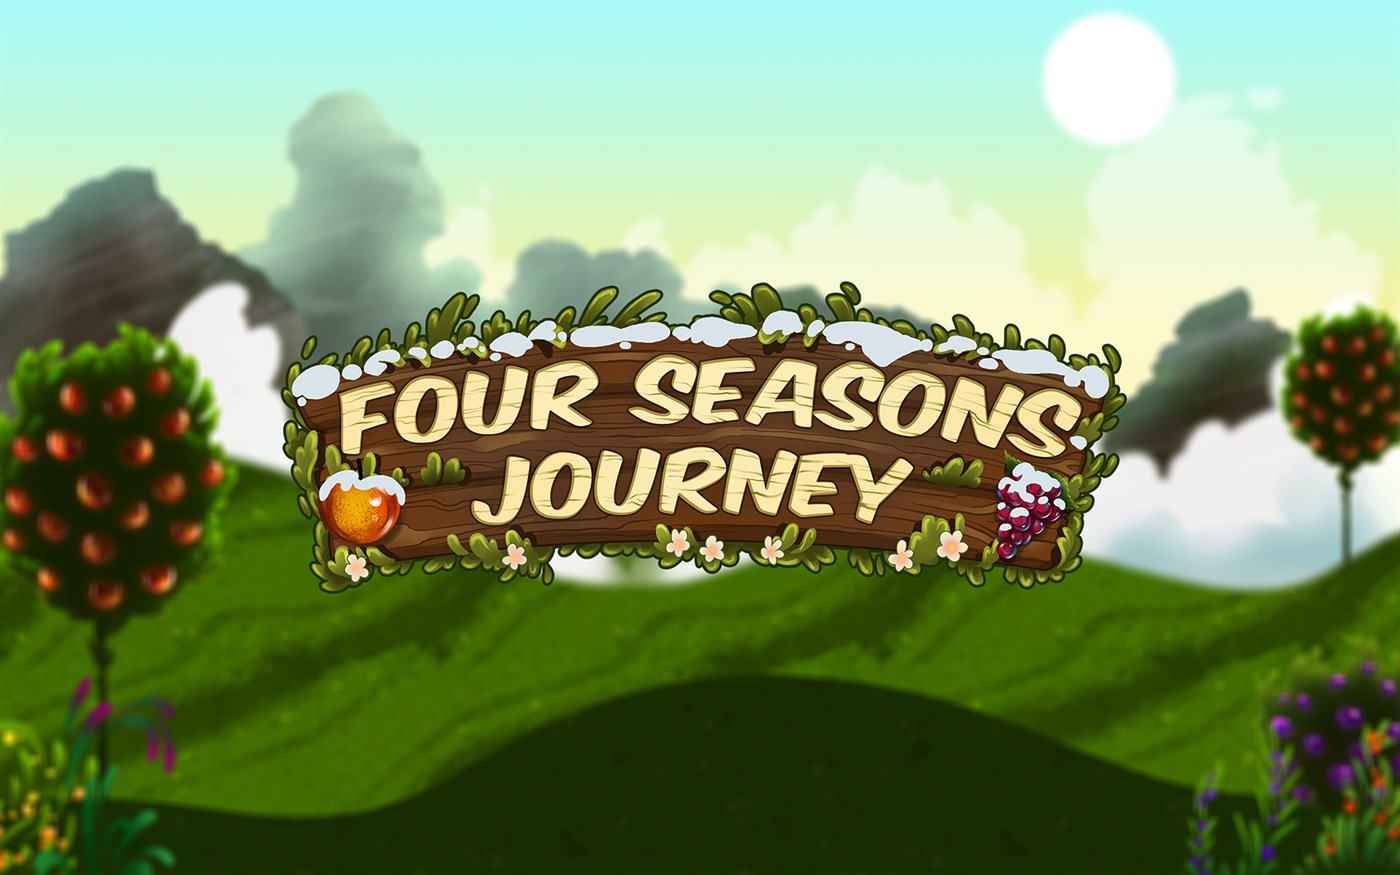 Win journey. Four Seasons игра. Takes Journey на андроид. Seasons. Ярлык Journey игра.